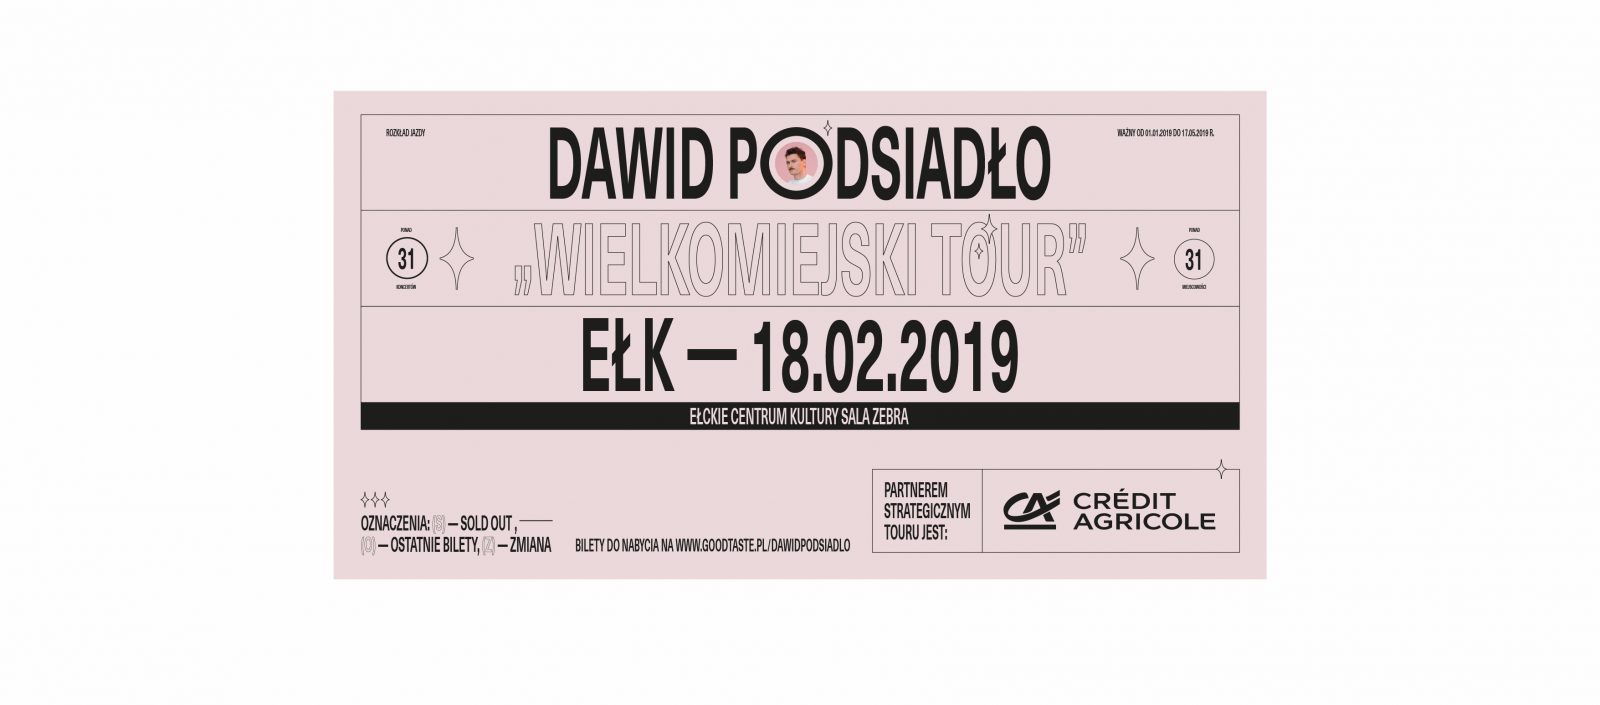 Wielkomiejski Tour • Ełk Dawid Podsiadło